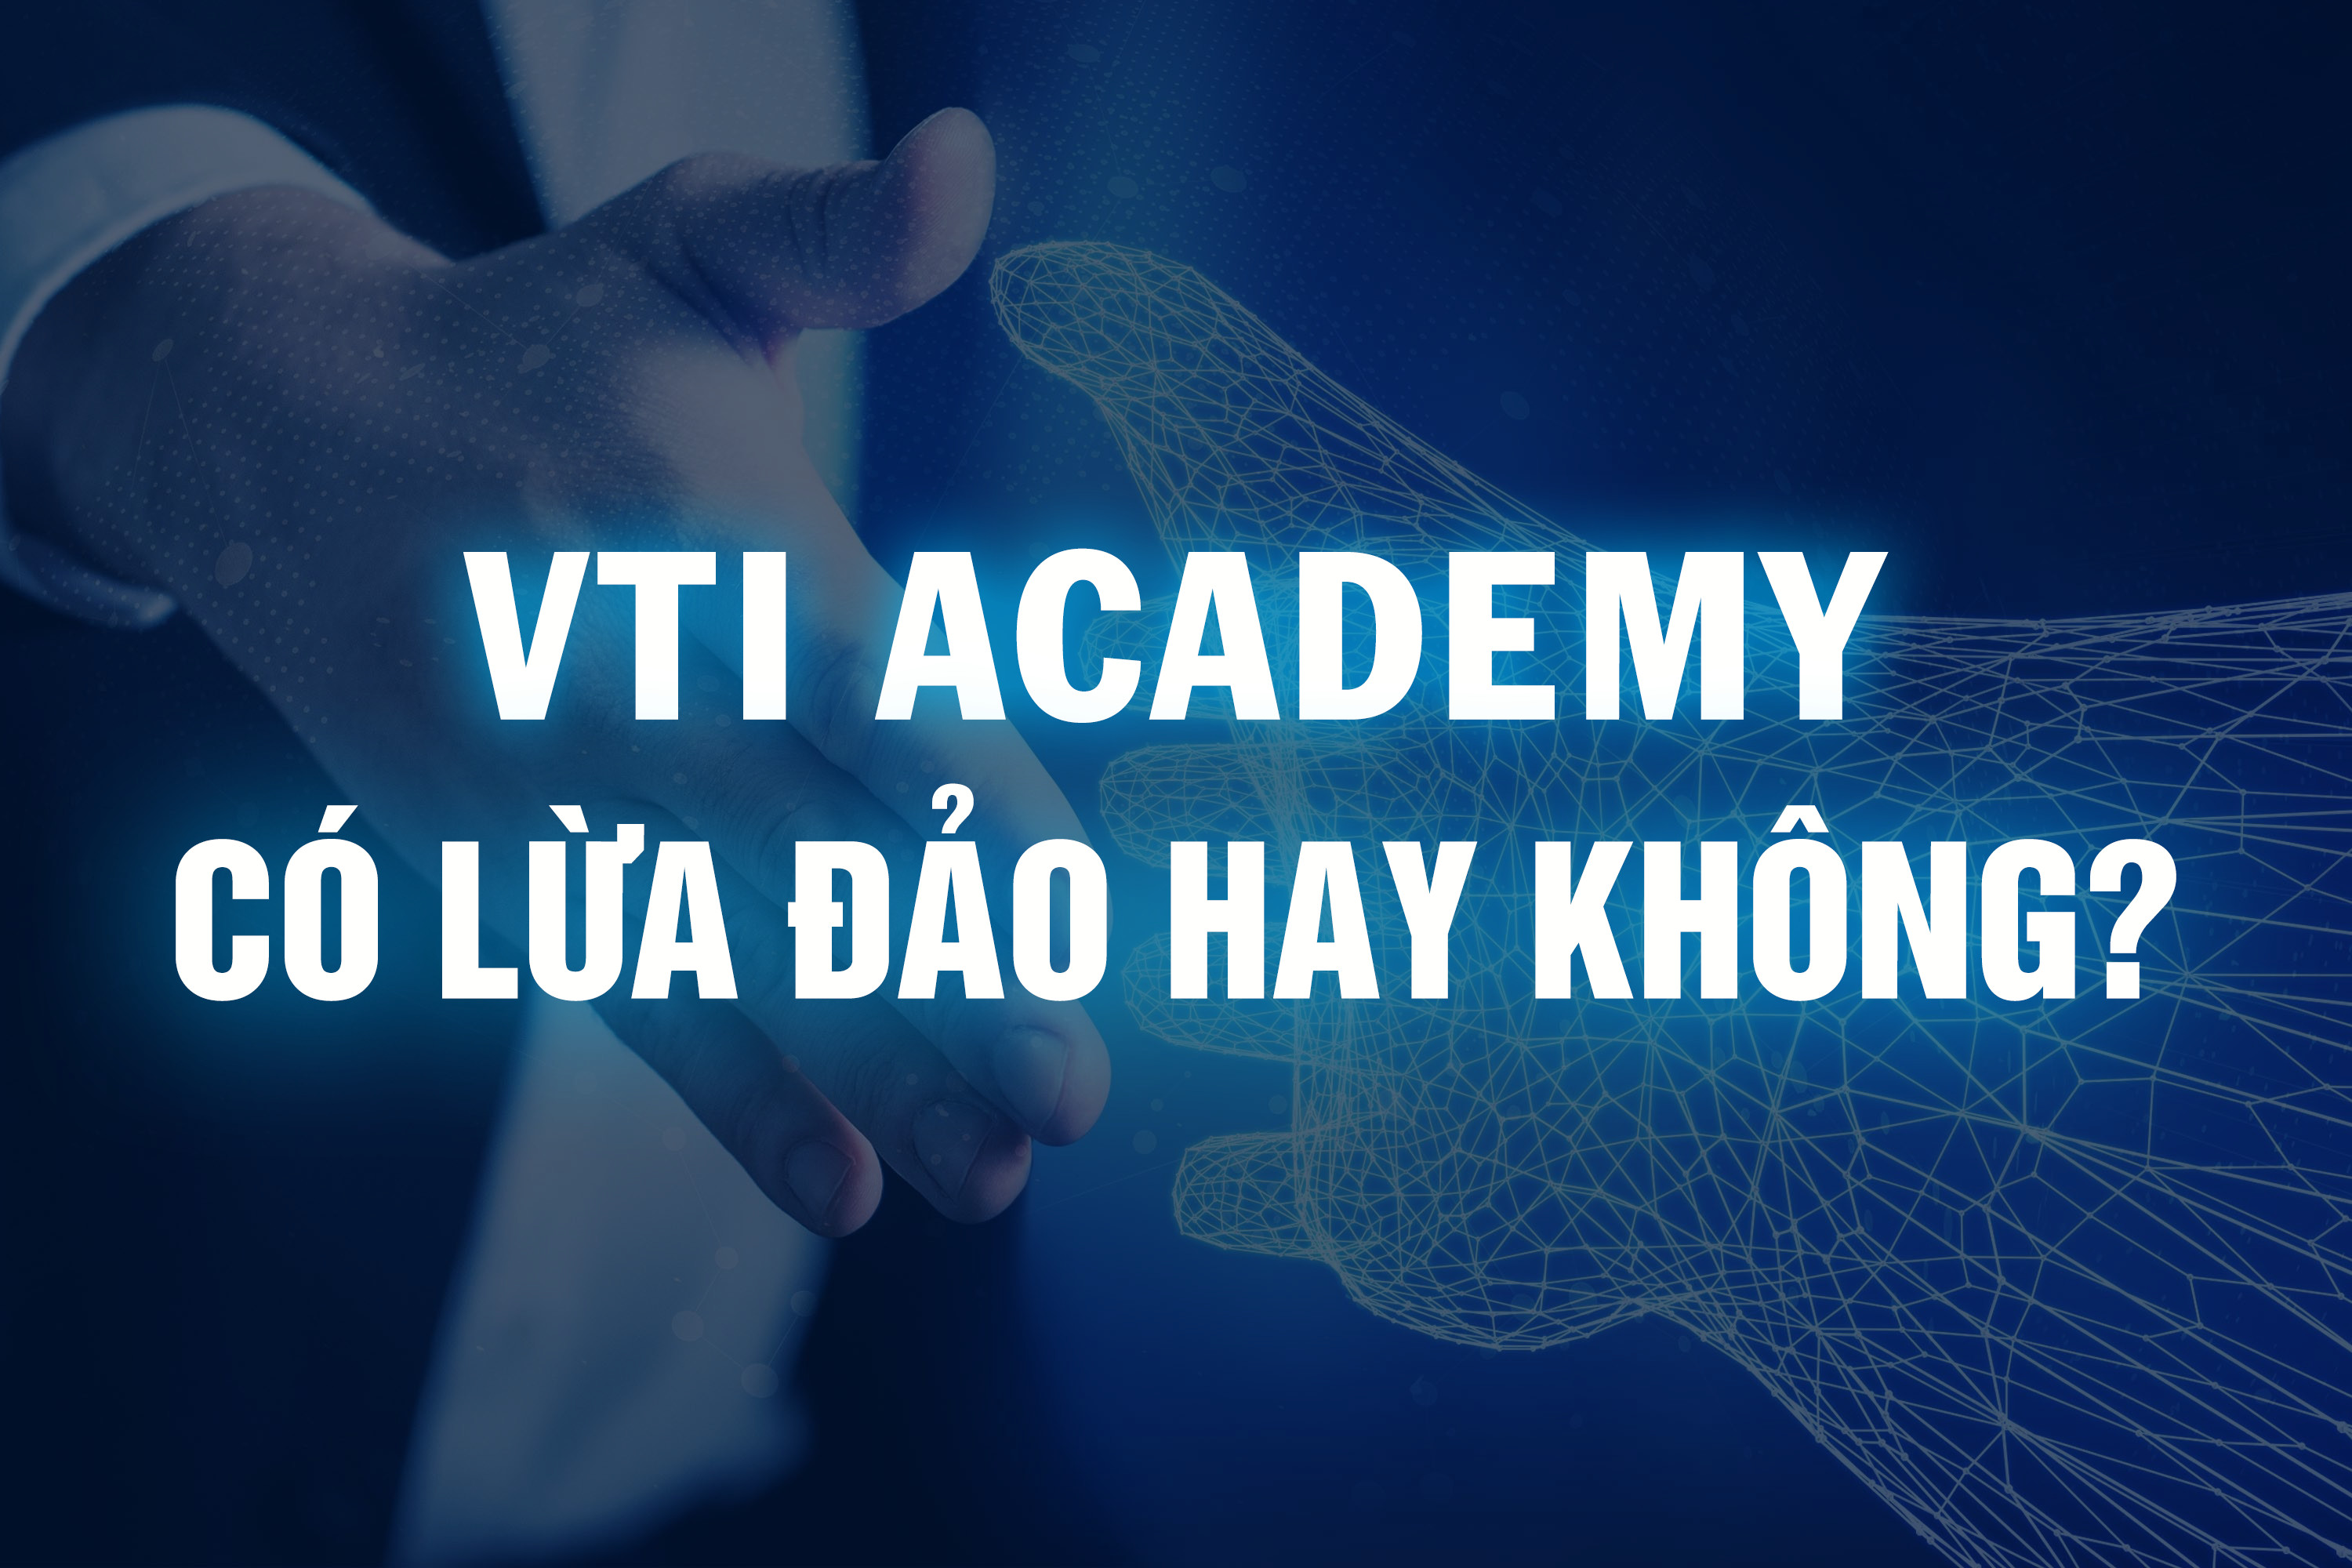 VTI Academy có lừa đảo hay không?